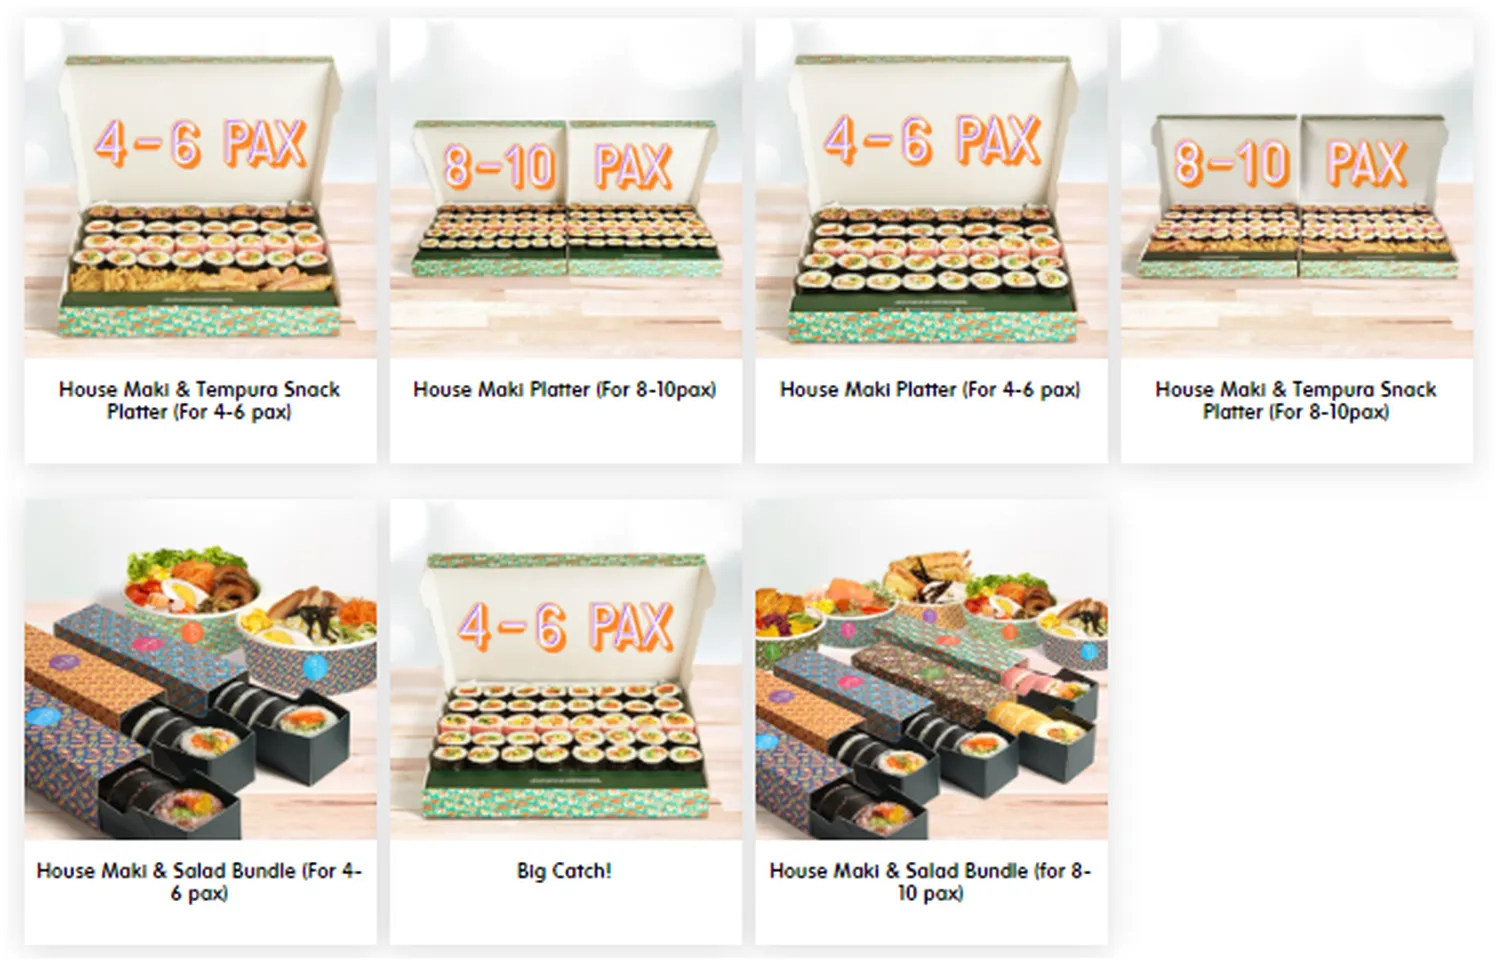 makisan menu singapore makiparti bundles